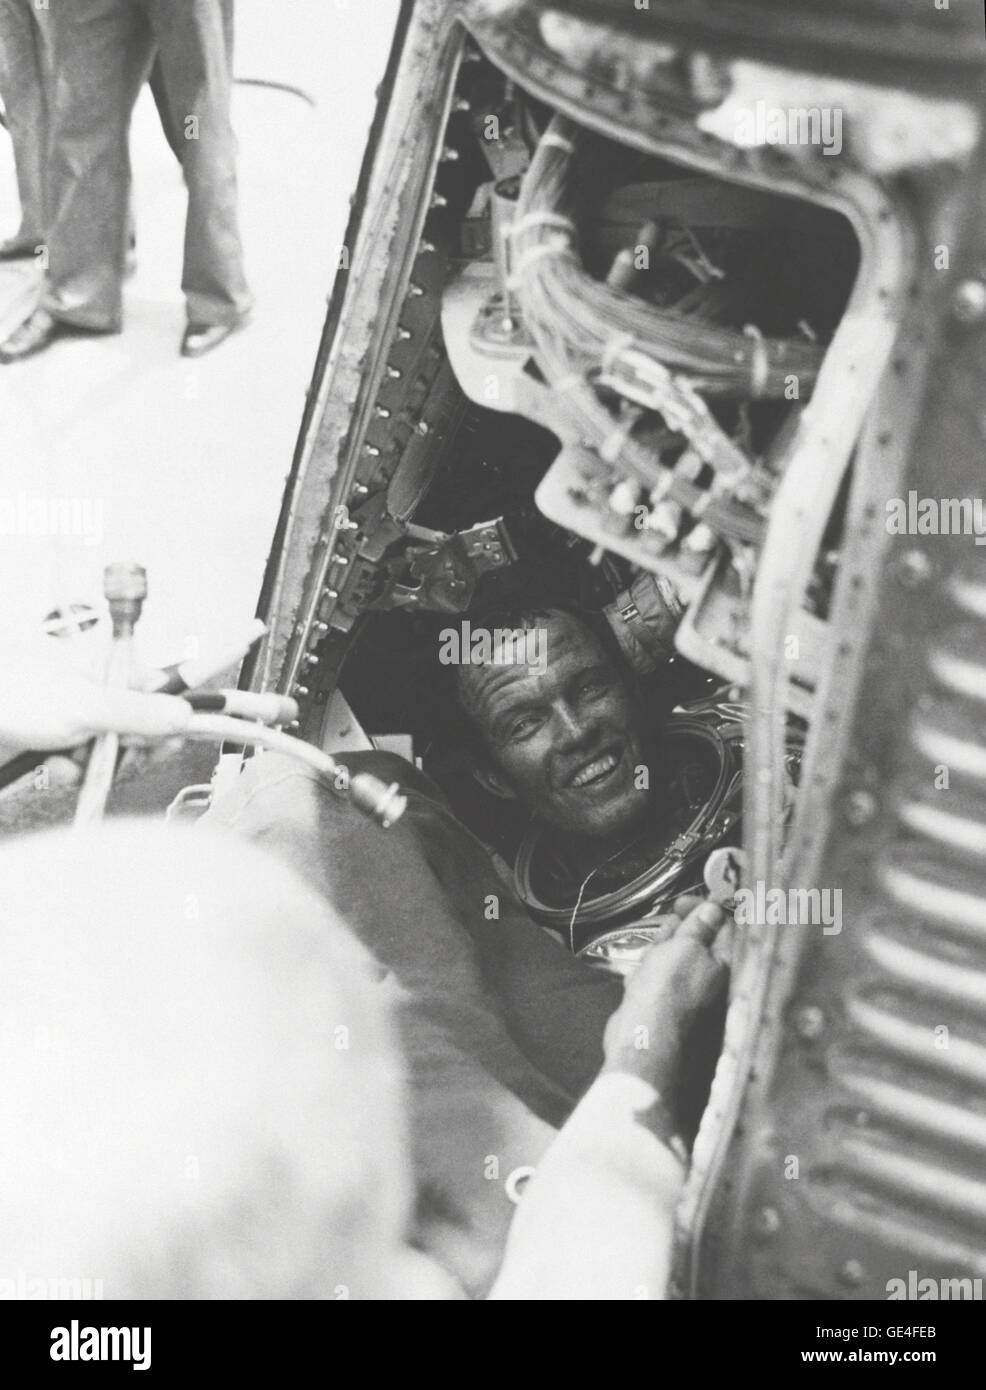 L. astronauta Gordon Cooper Jr., tiene una sonrisa para la recuperación de la tripulación del U.S.S. Kearsarge, después de que él está a bordo de un exitoso 22 misión orbital de la Tierra en su nave espacial de mercurio "Fe 7." Cooper todavía está sentado en su cápsula, con su casco. Imagen # : S63-07852 Fecha: Mayo 16, 1963. Foto de stock